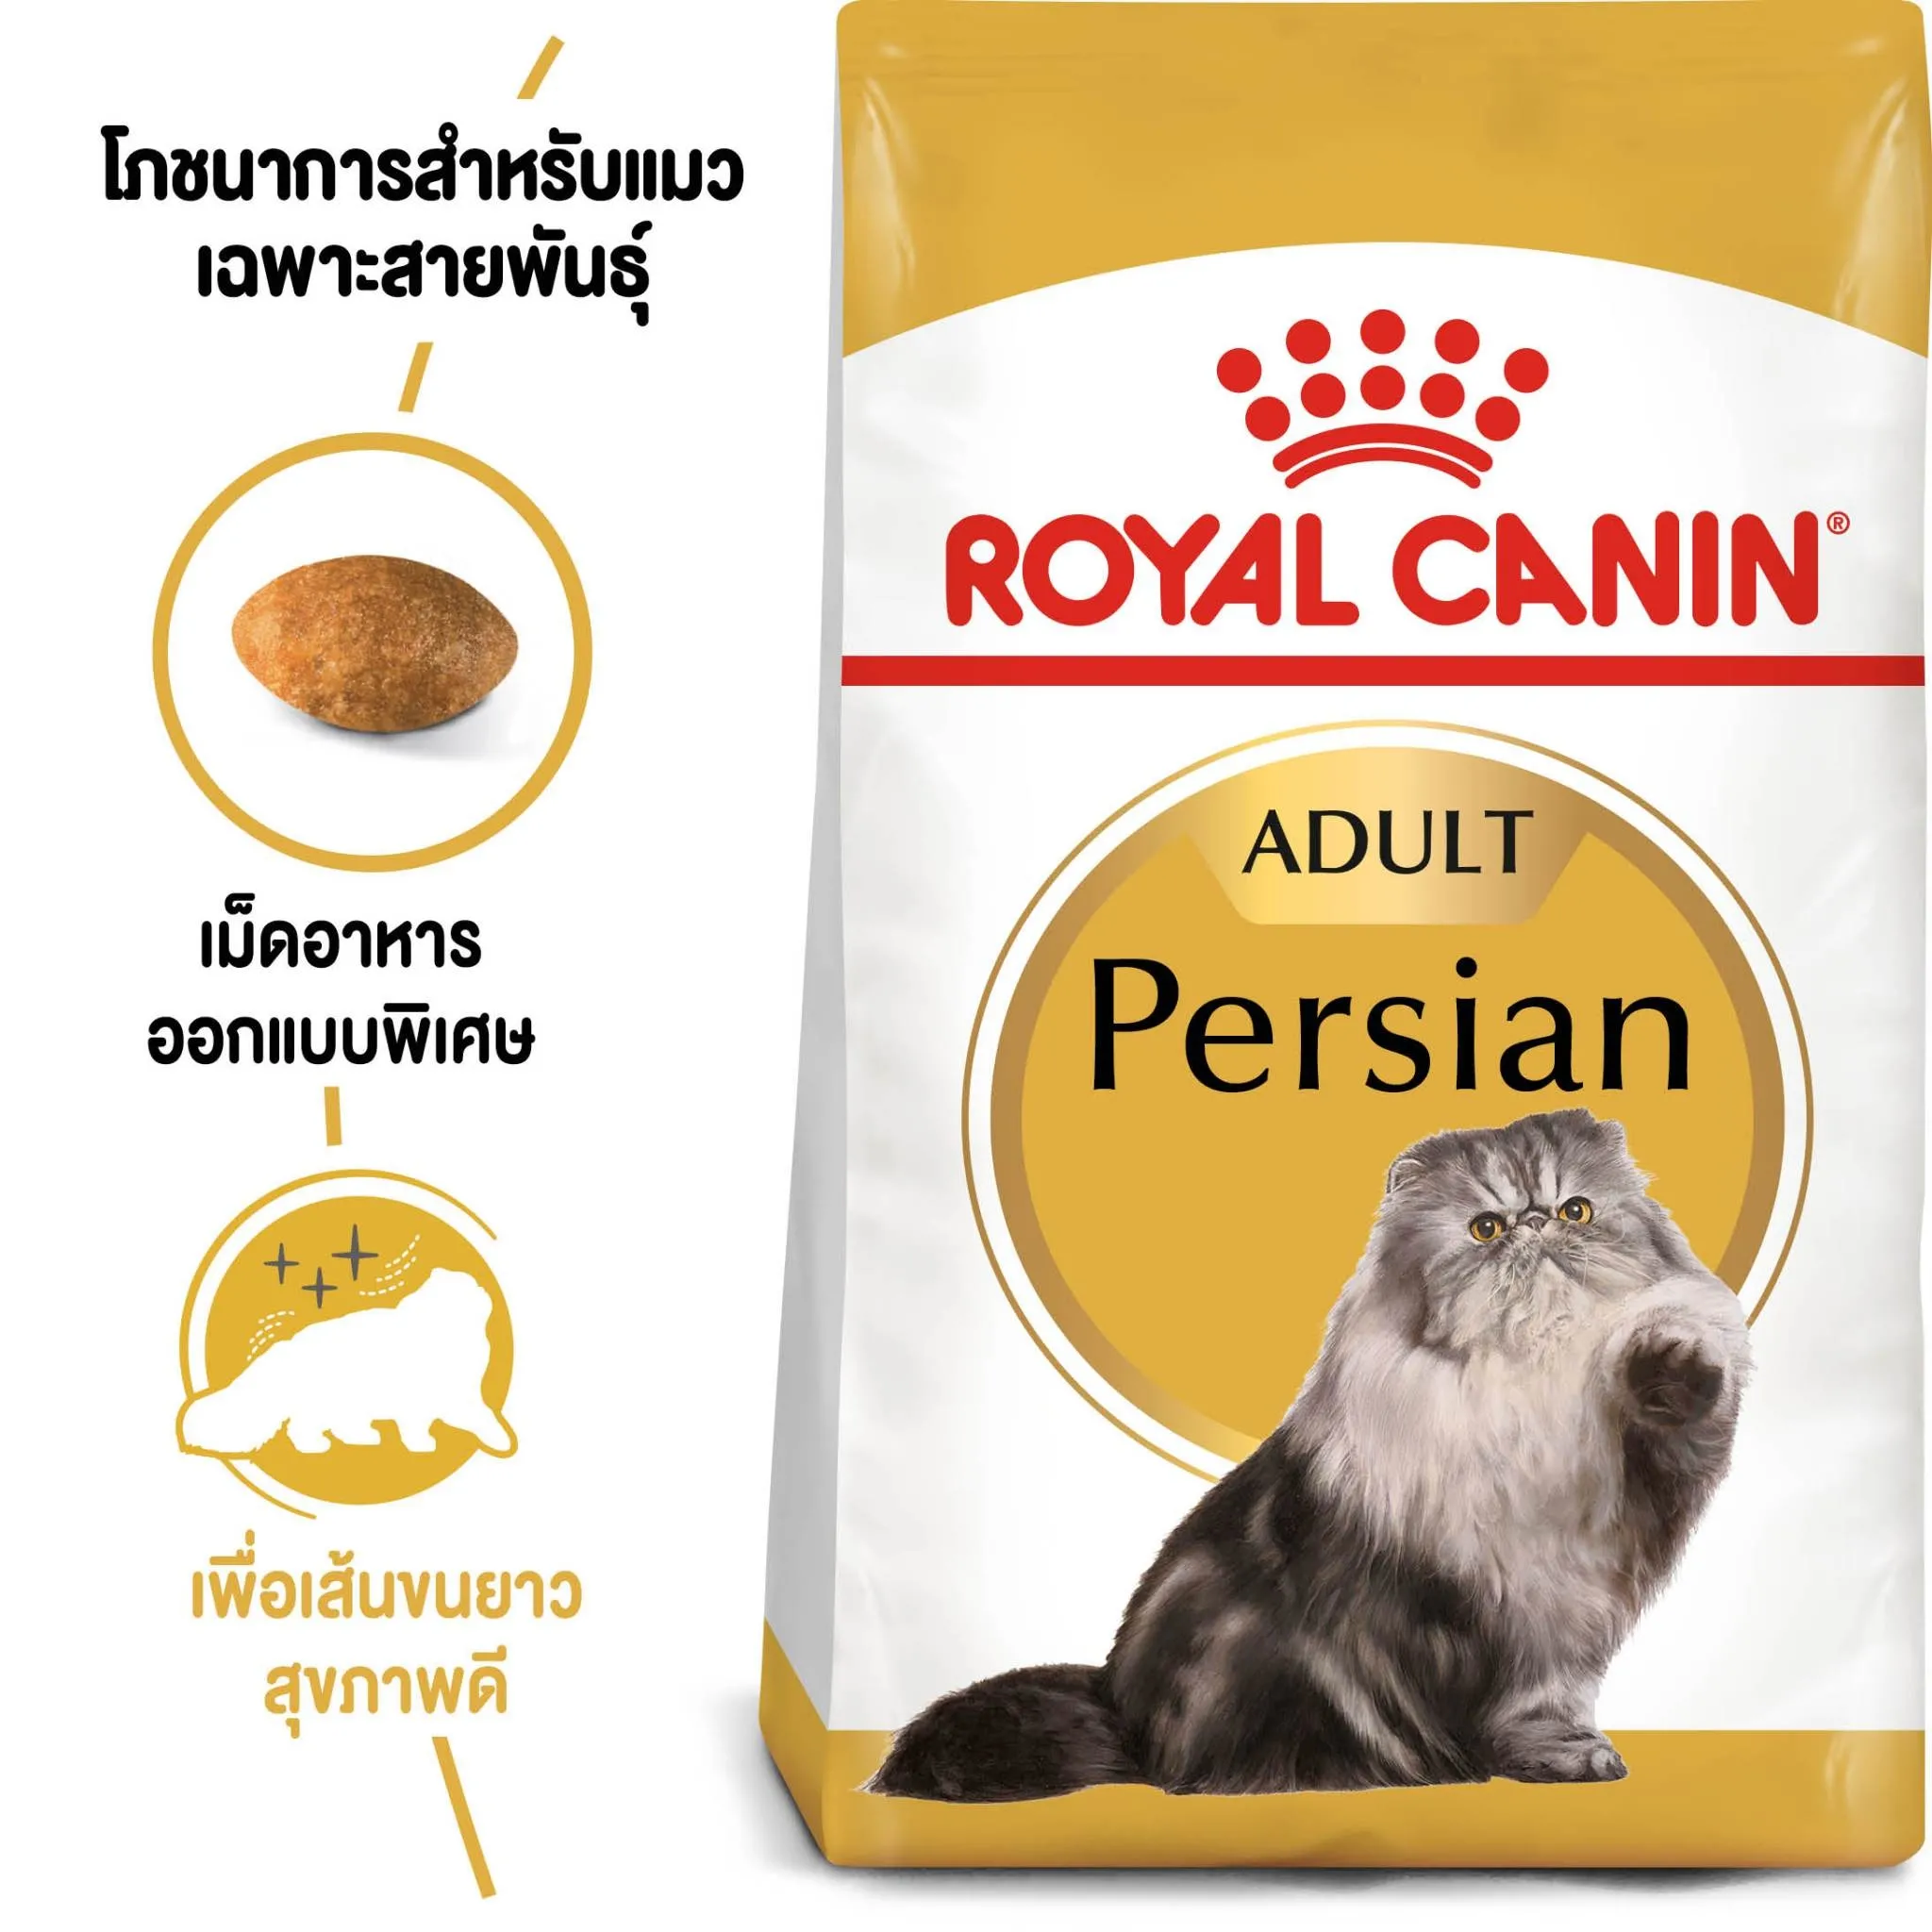 ROYAL CANIN Persian Adult อาหารเม็ดสำหรับแมวโต สายพันธุ์เปอร์เซีย